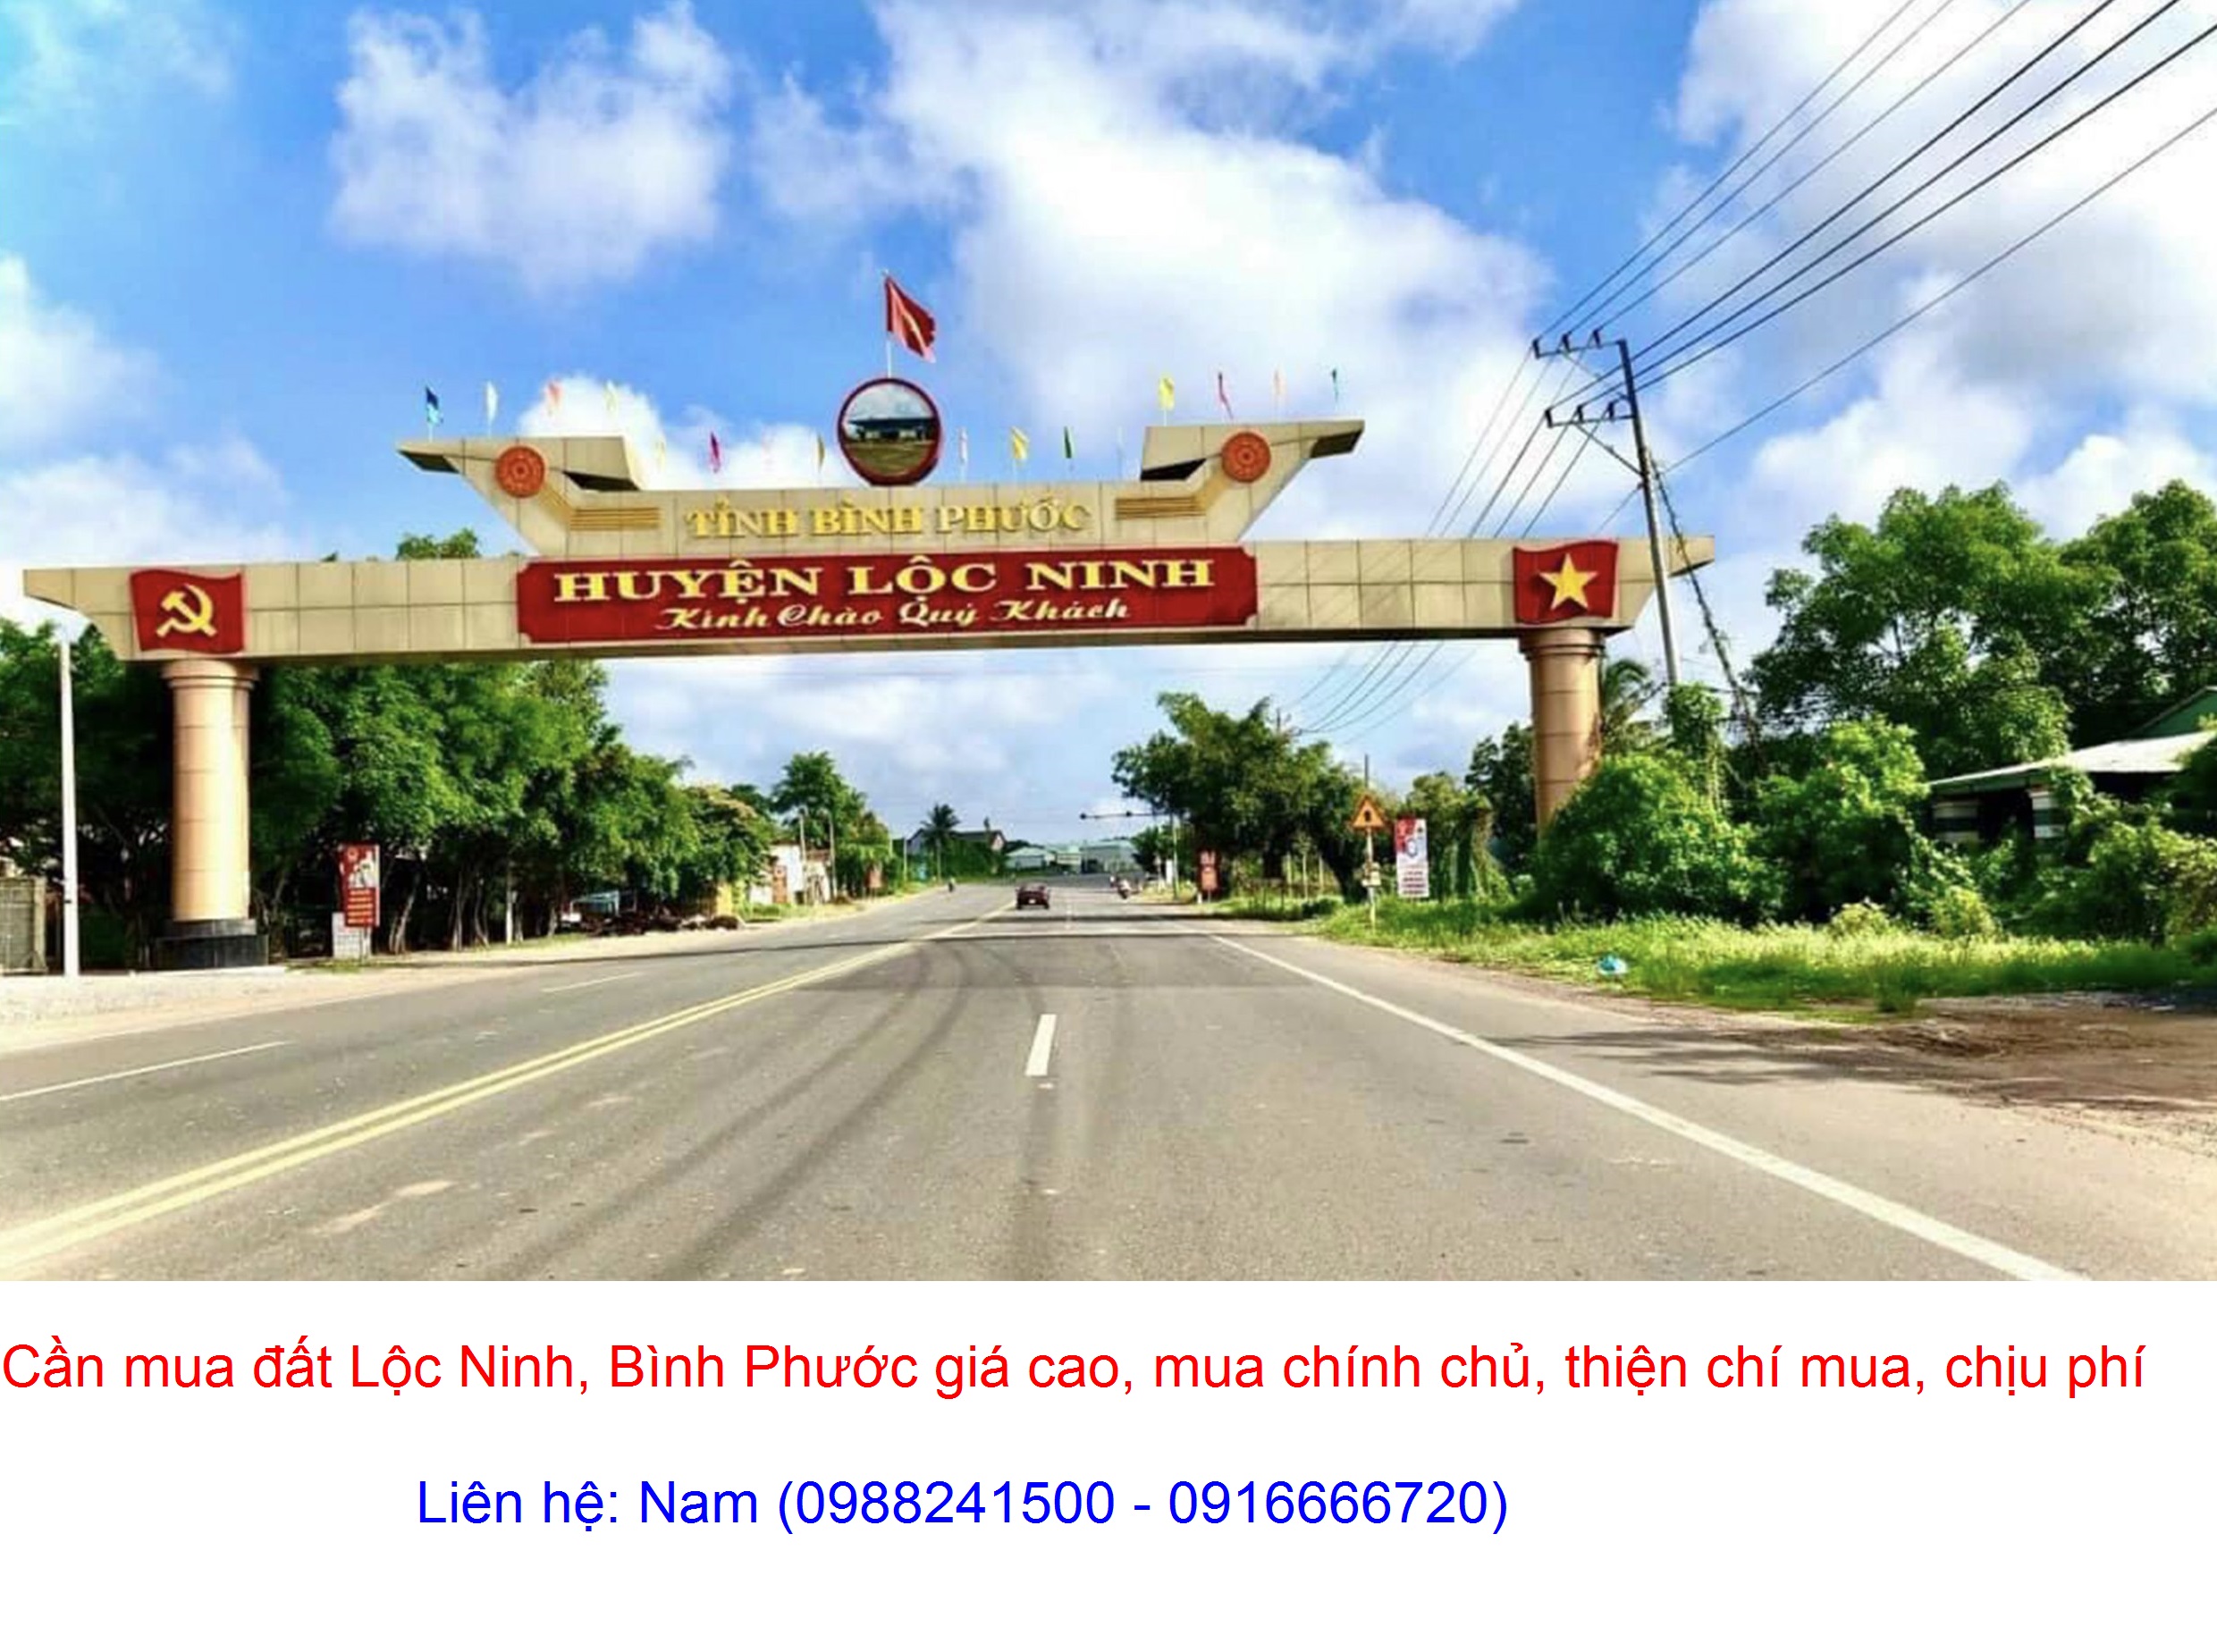 Cần mua gấp đất Lộc Thuận, Lộc Ninh giá cao, thiện chí mua, chịu phí sang tên